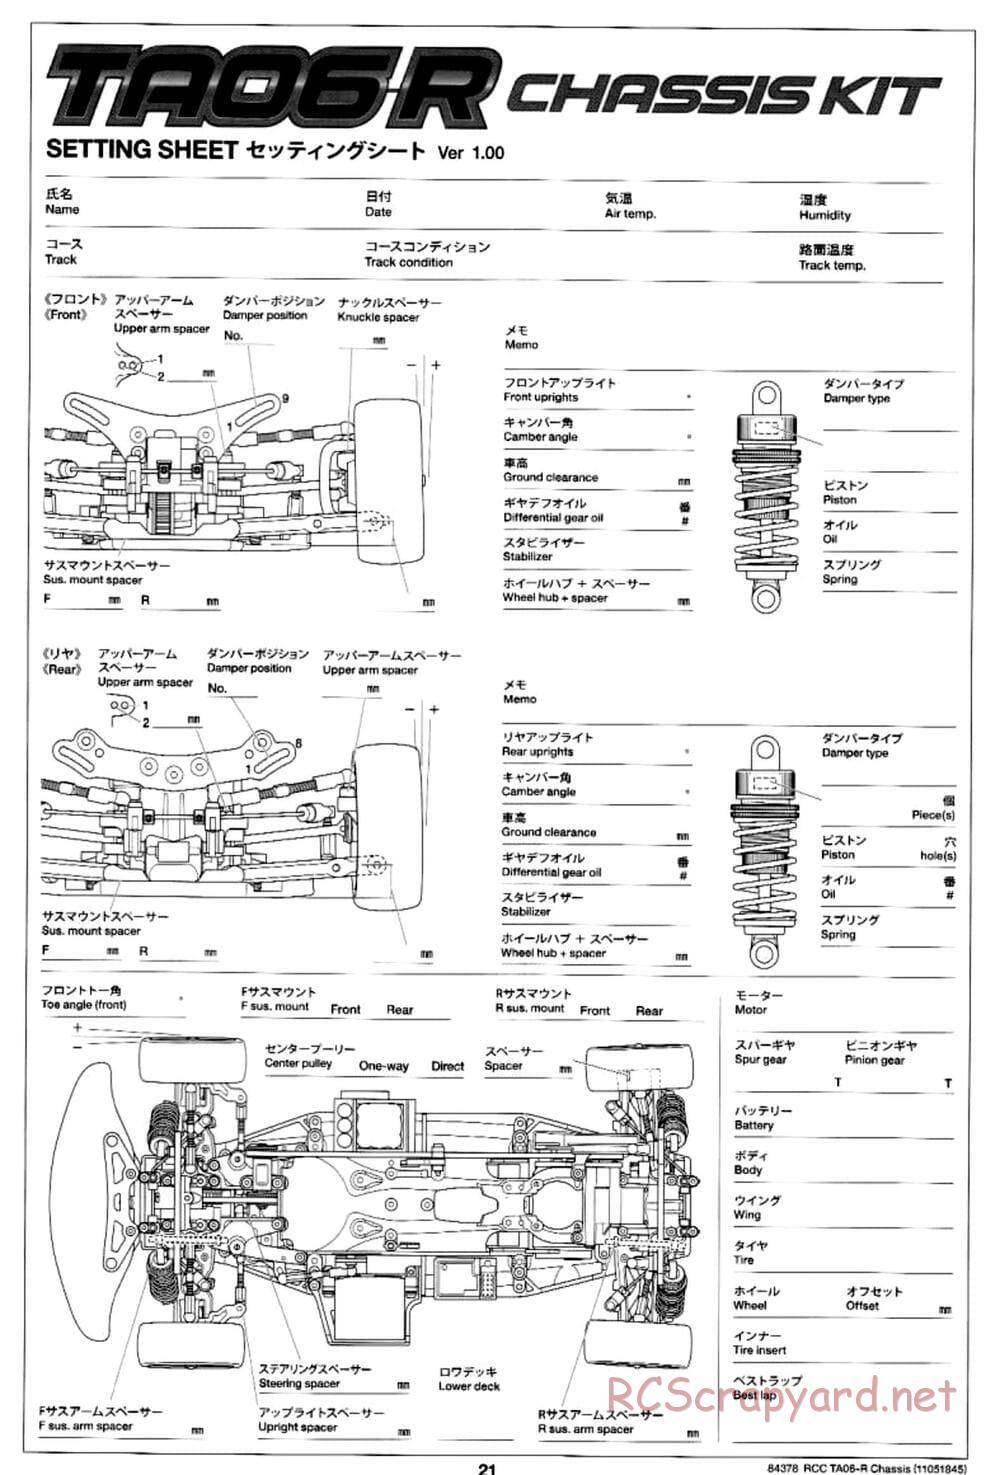 Tamiya - TA06-R Chassis - Manual - Page 21